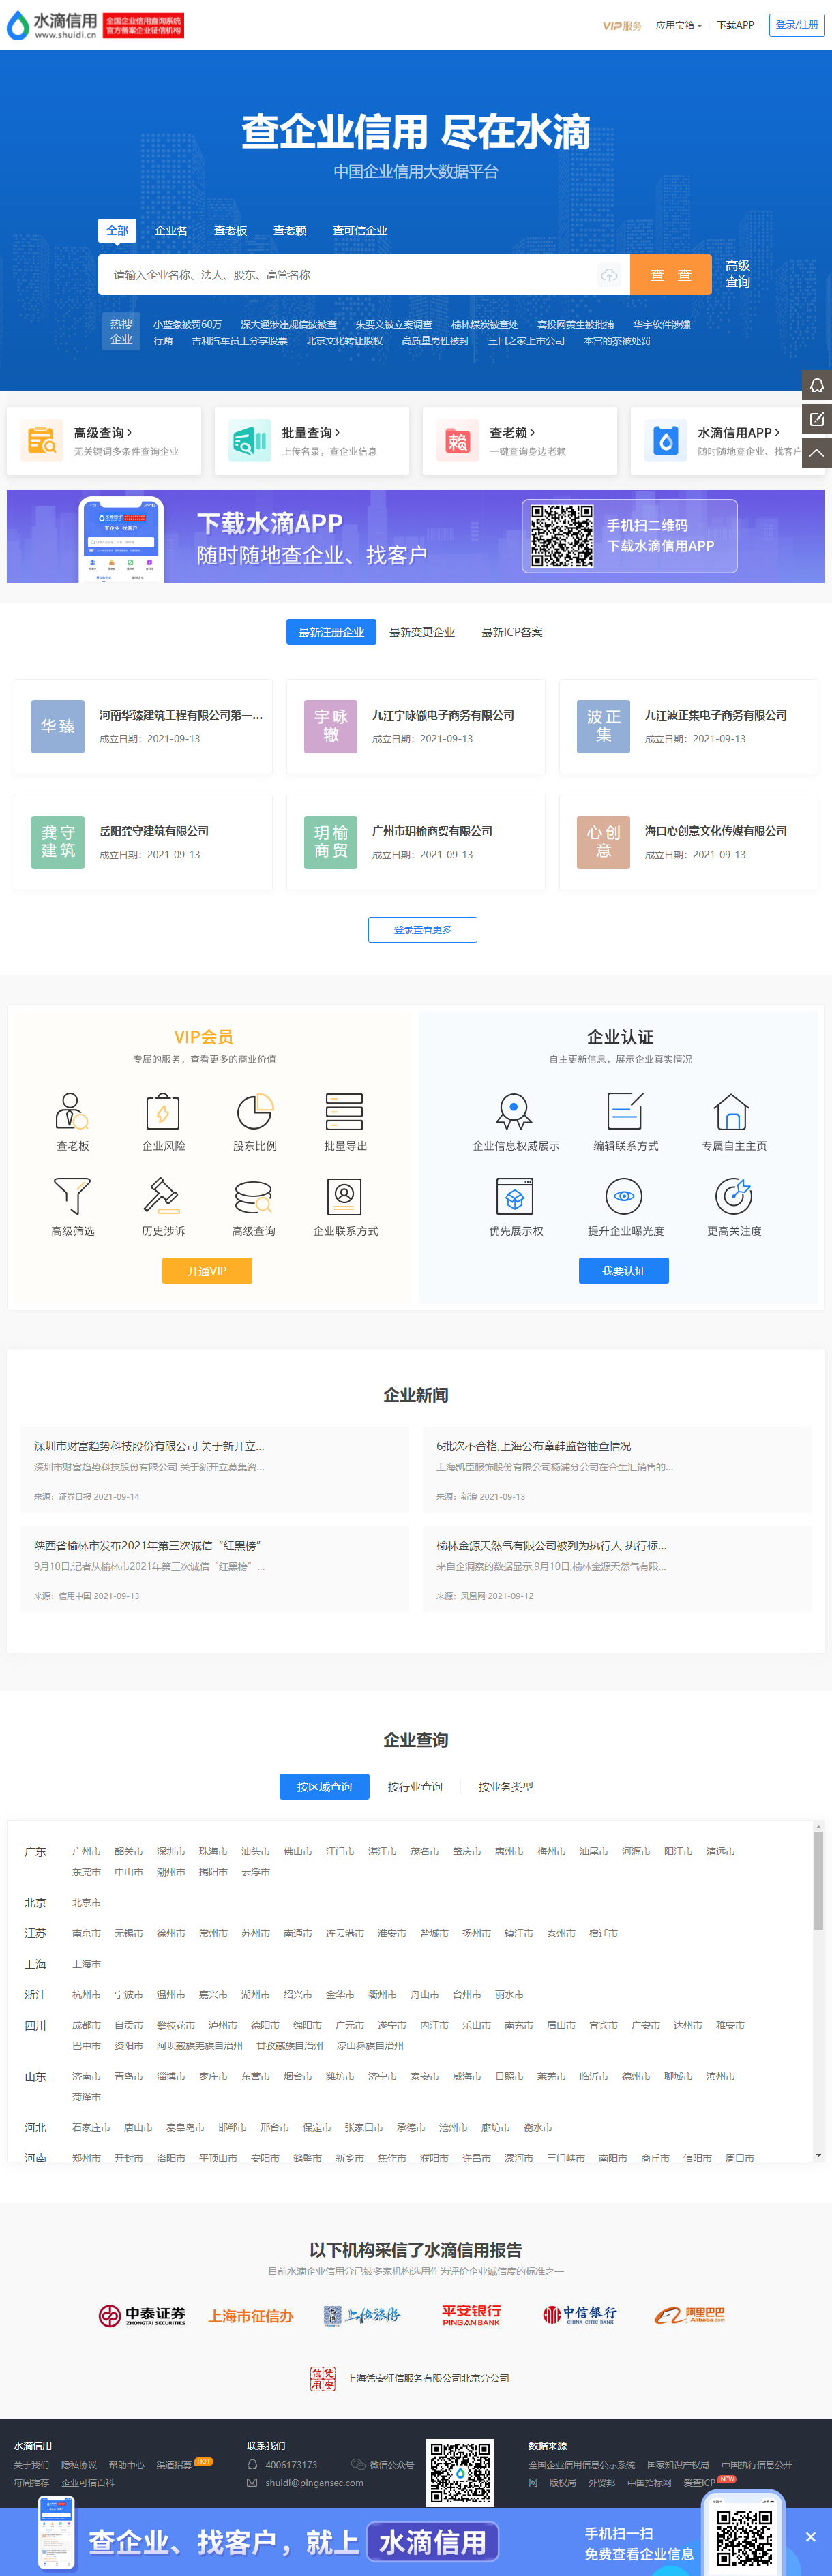 上海凭安网络科技有限公司网站案例